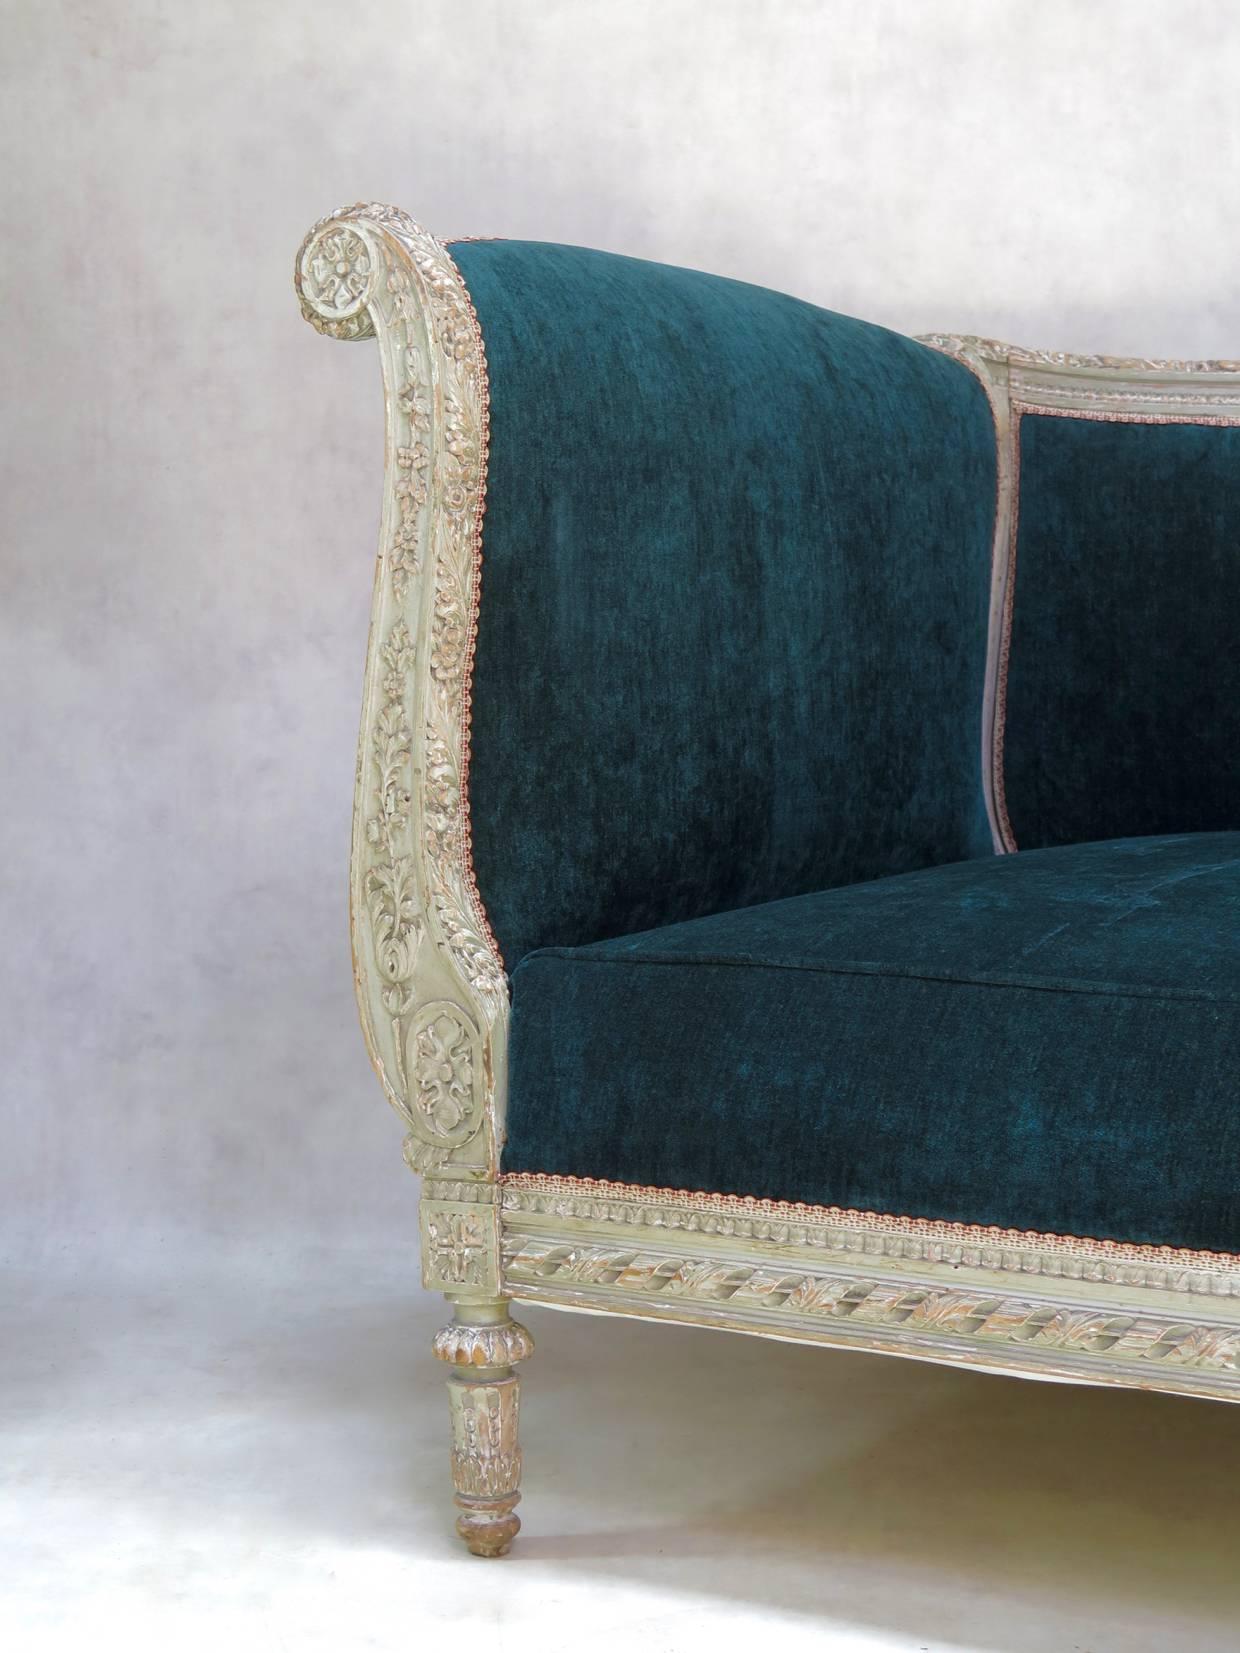 French Louis XVI Style Teal Velvet Upholstered Settee, France, 19th Century